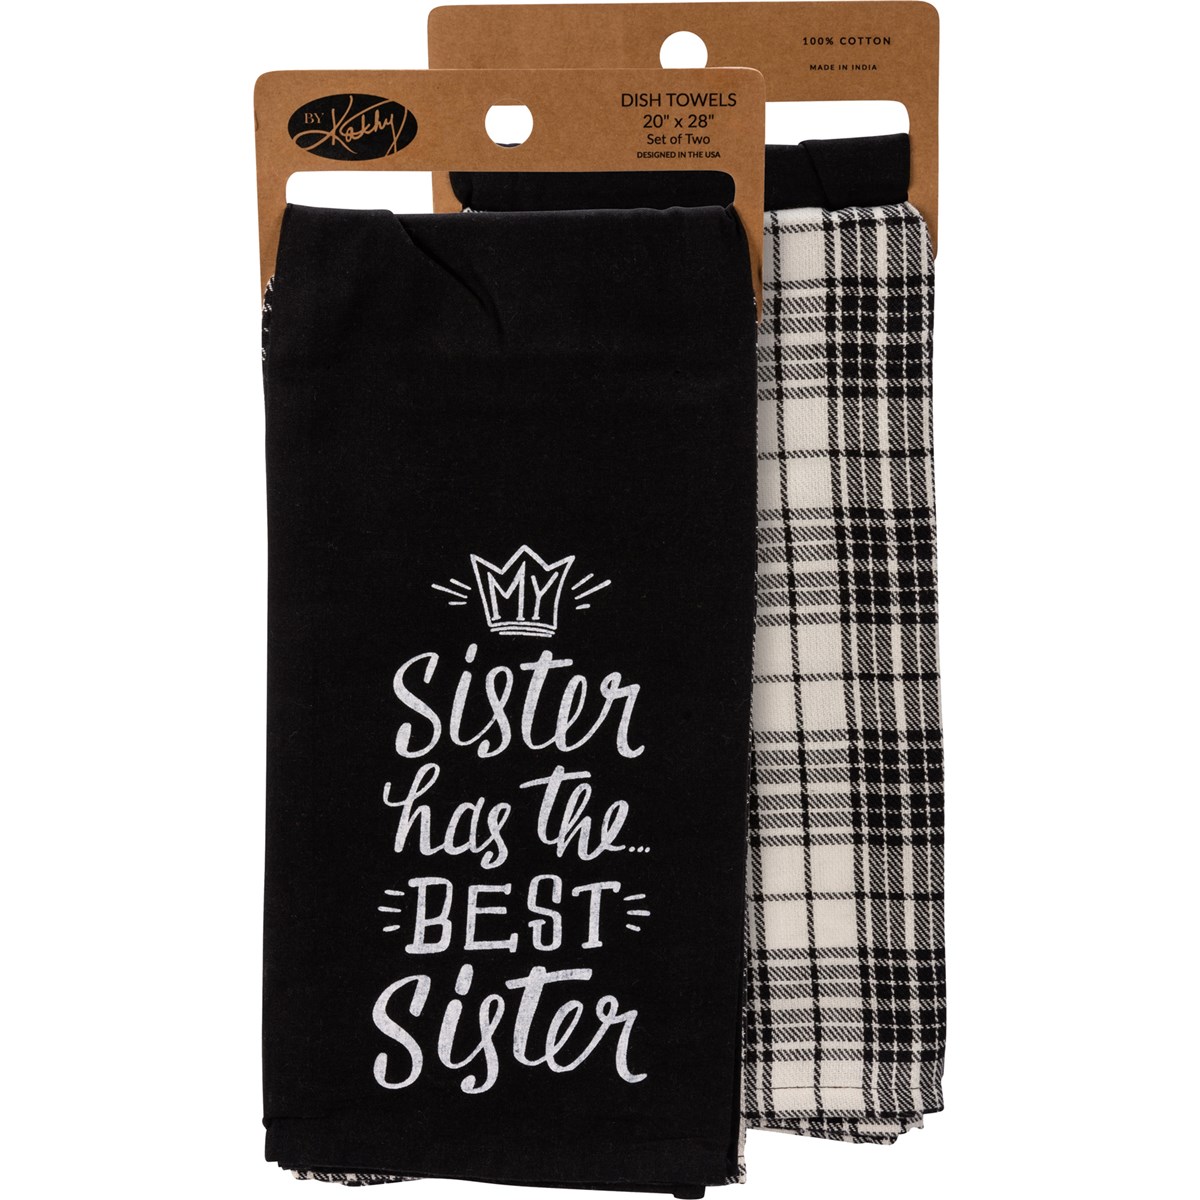 Best Sister Kitchen Towel Set - Cotton